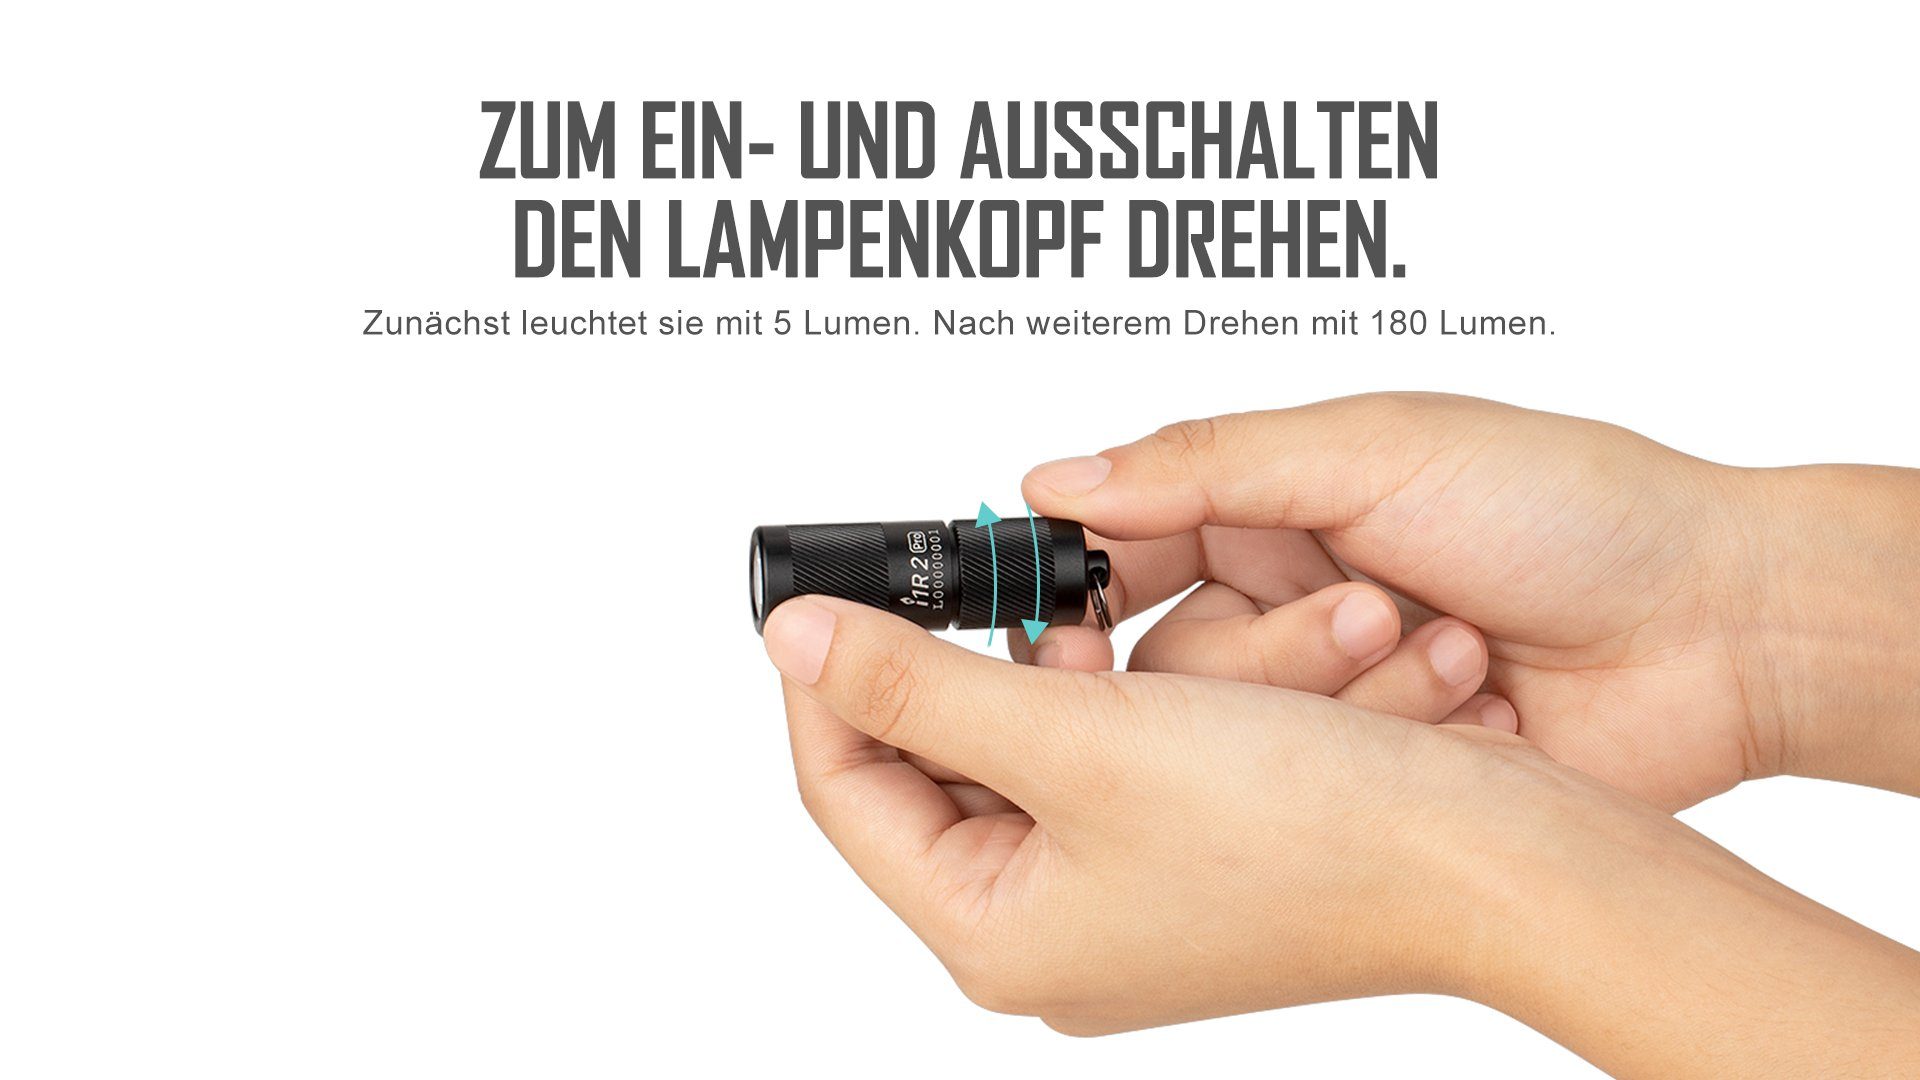 Pro schwarz Taschenlampe LED Taschenlampe Mini Schlüsselbund I1R2 OLIGHT